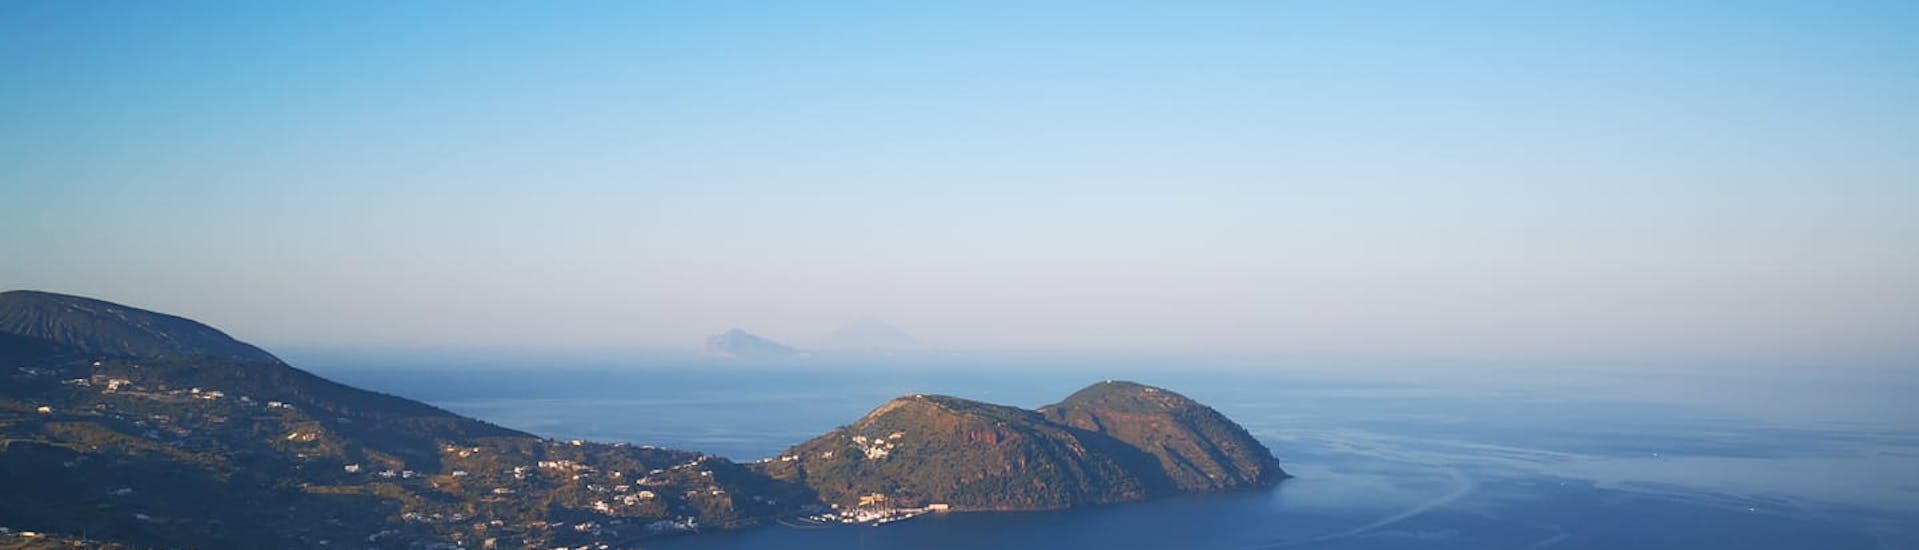 Foto der Insel Lipari, aufgenommen während der Bootstour zu den Inseln Lipari und Salina mit Regina Eolie Navigazione.